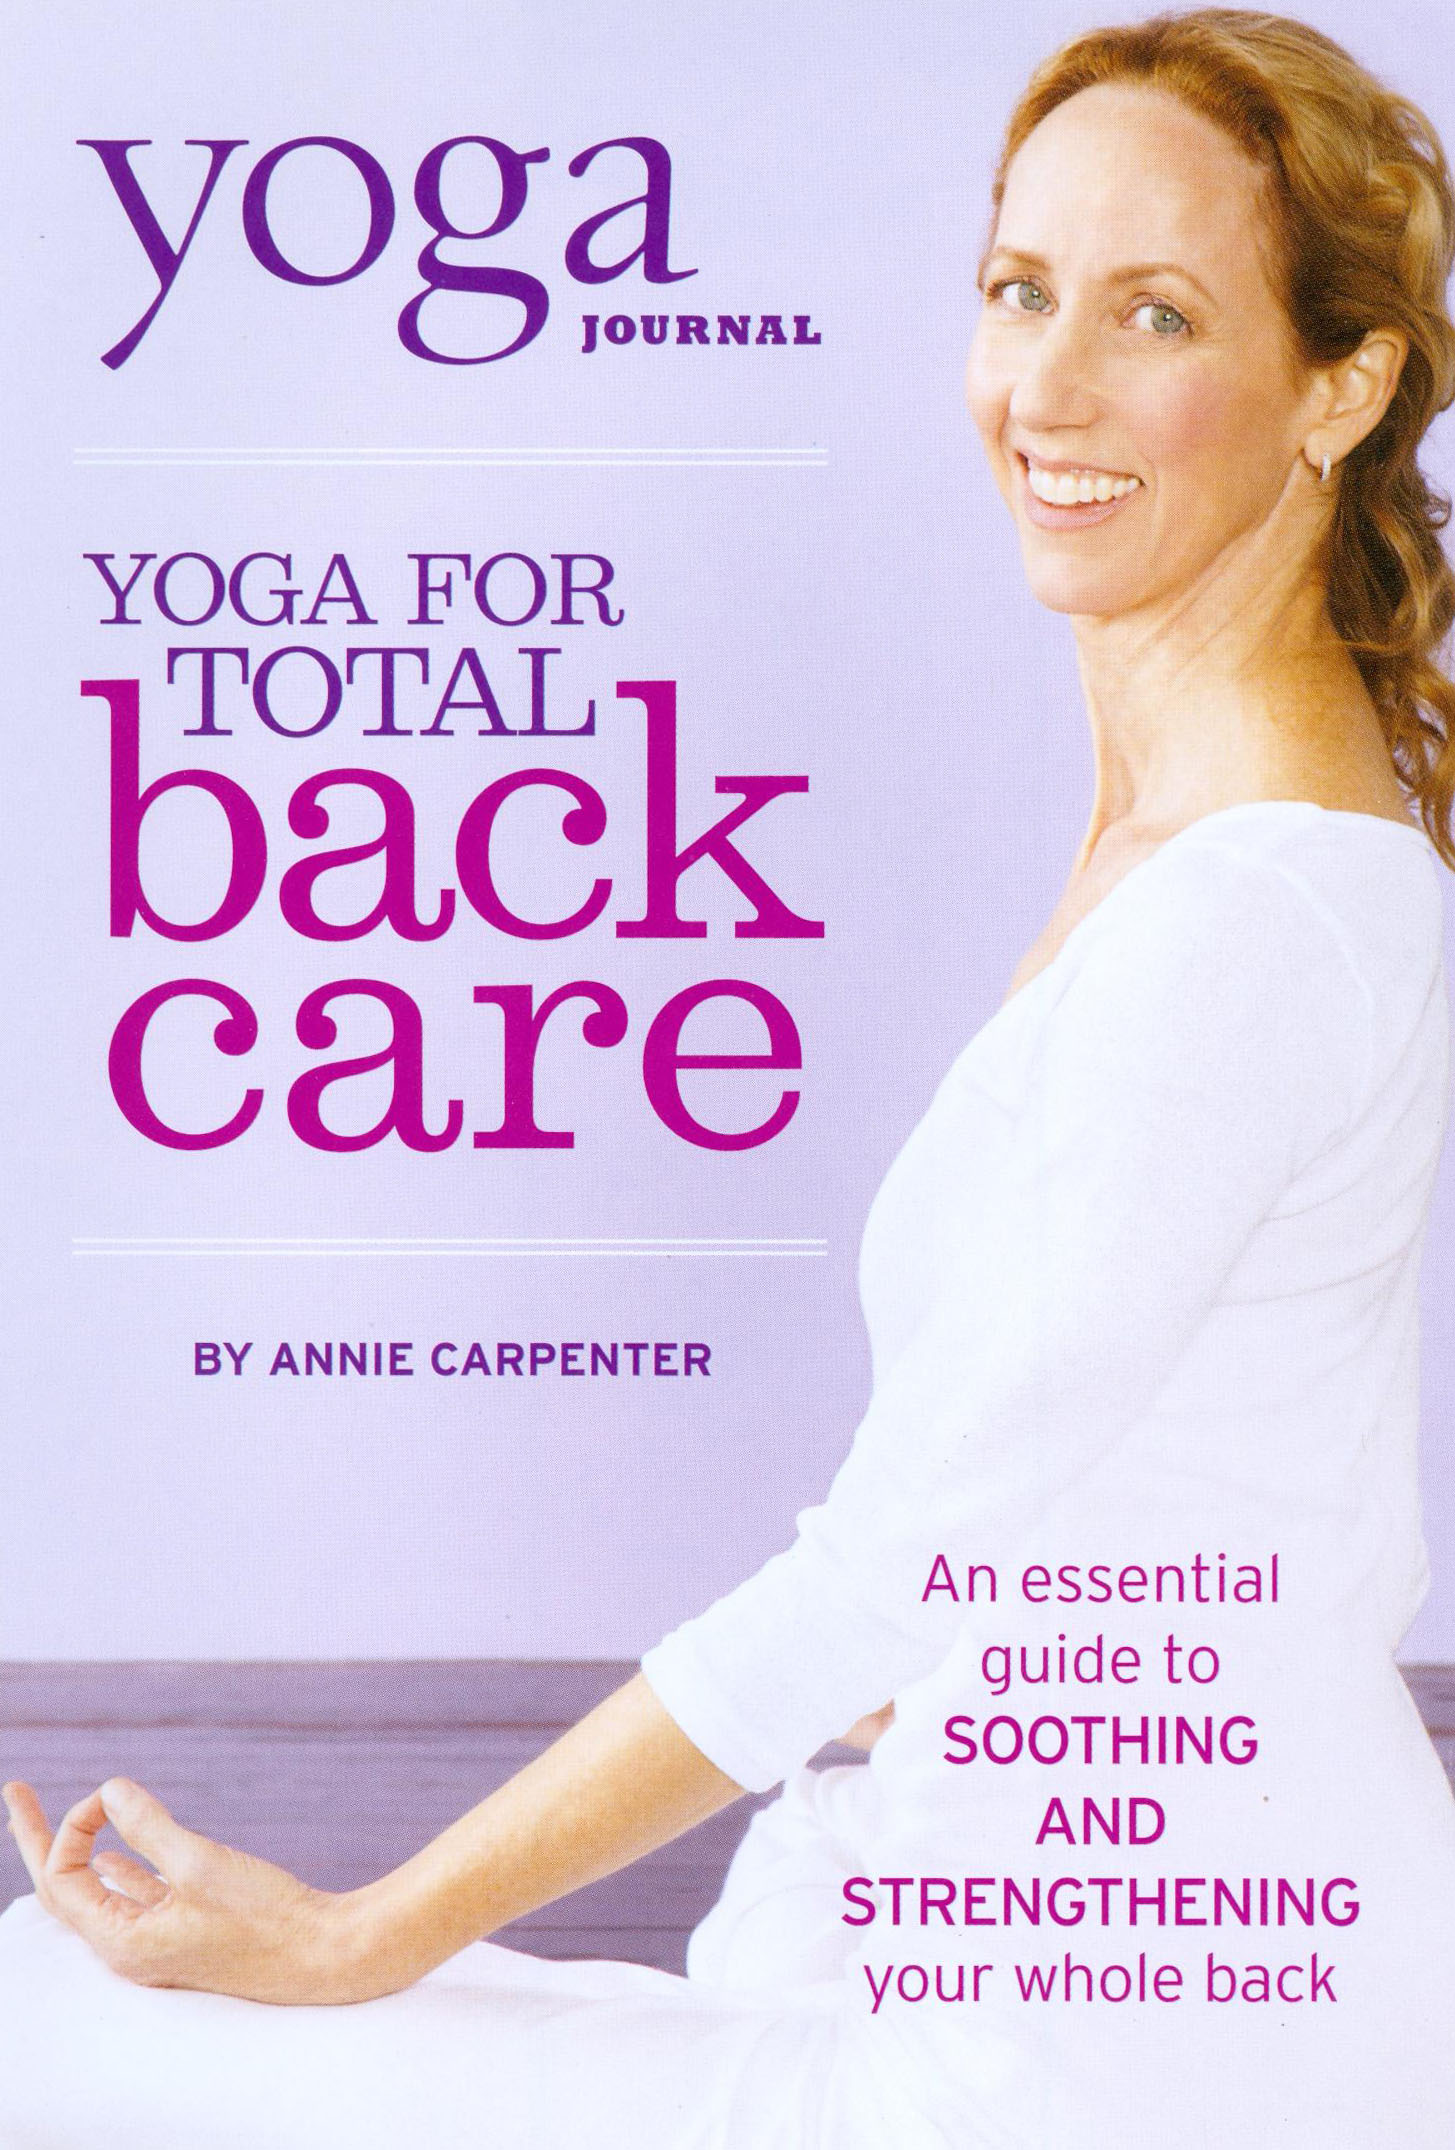 Best Buy: Yoga Journal's Yoga for Back Care [DVD] [2002]